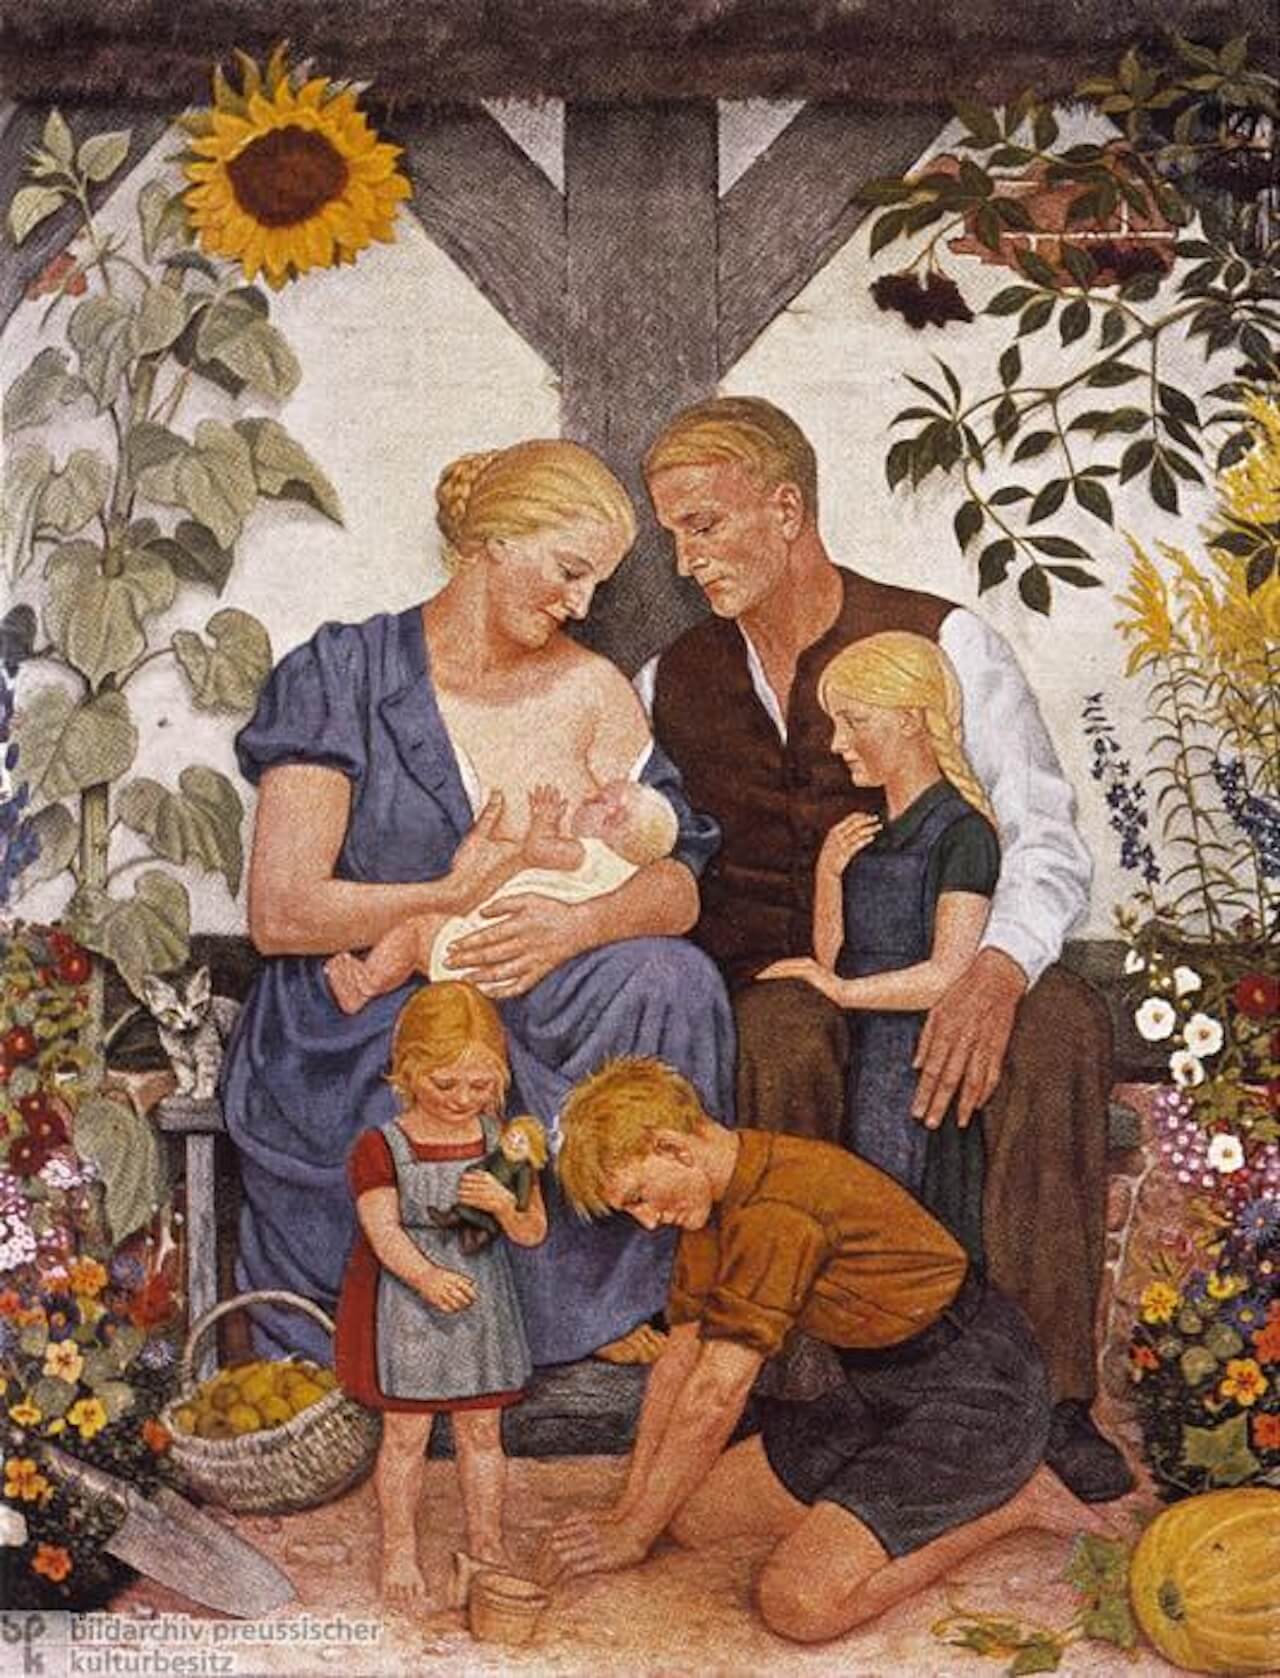 "La famiglia ariana" è una stampa tratta da un dipinto di Wolfgang Willrich. Raffigura quella che potrebbe essere descritta come la quintessenza della famiglia ideale voluta dai nazisti.